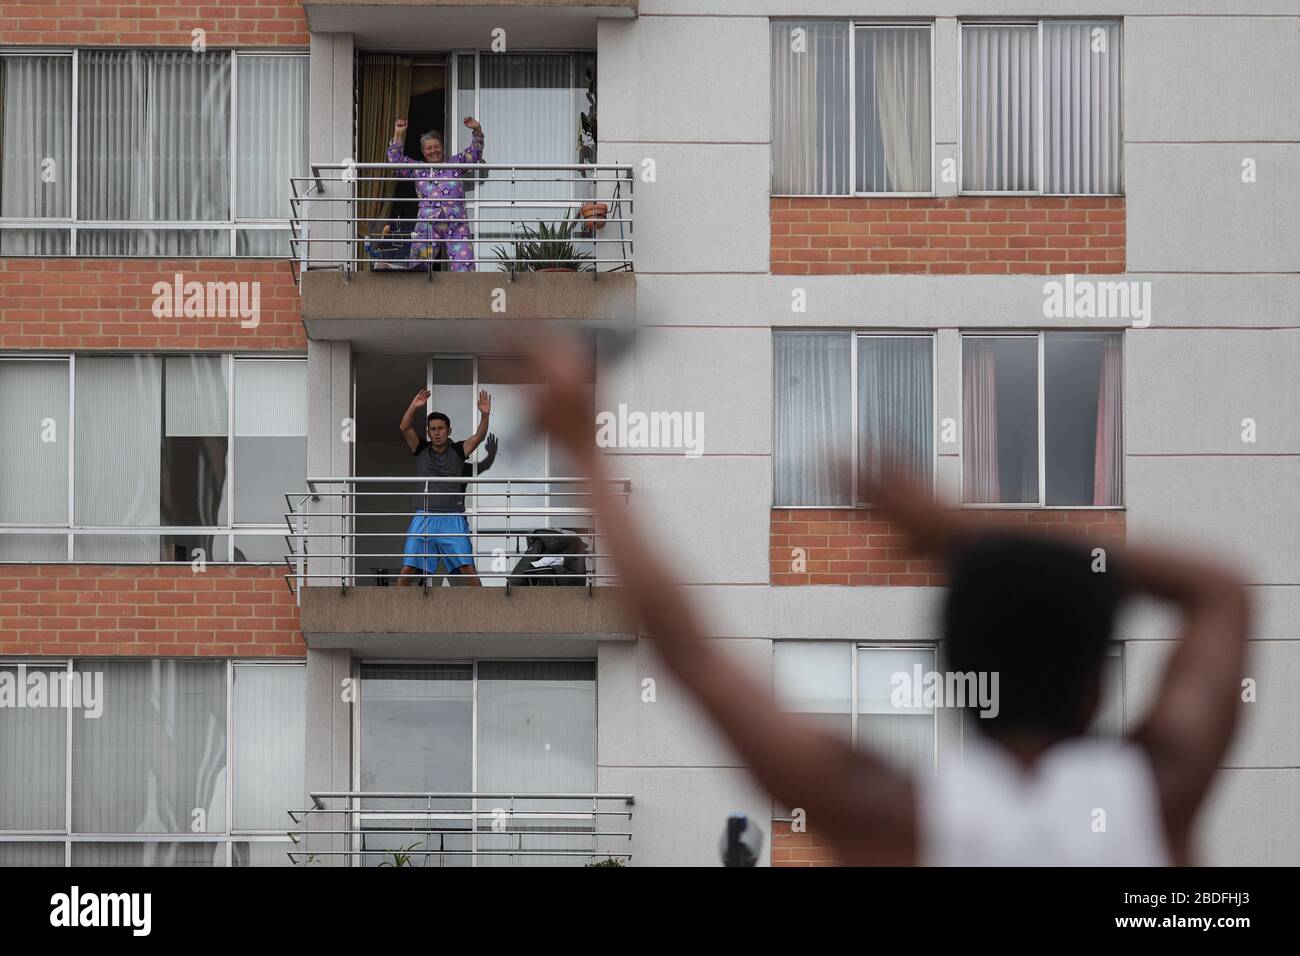 Bogota, Colombie. 7 avril 2020. Les résidents font de l'exercice physique sur les balcons de Bogota, Colombie, le 7 avril 2020. La Colombie a signalé mardi que le nombre de cas confirmés de COVID-19 avait augmenté à 1 780. Crédit: Jhon Paz/Xinhua/Alay Live News Banque D'Images